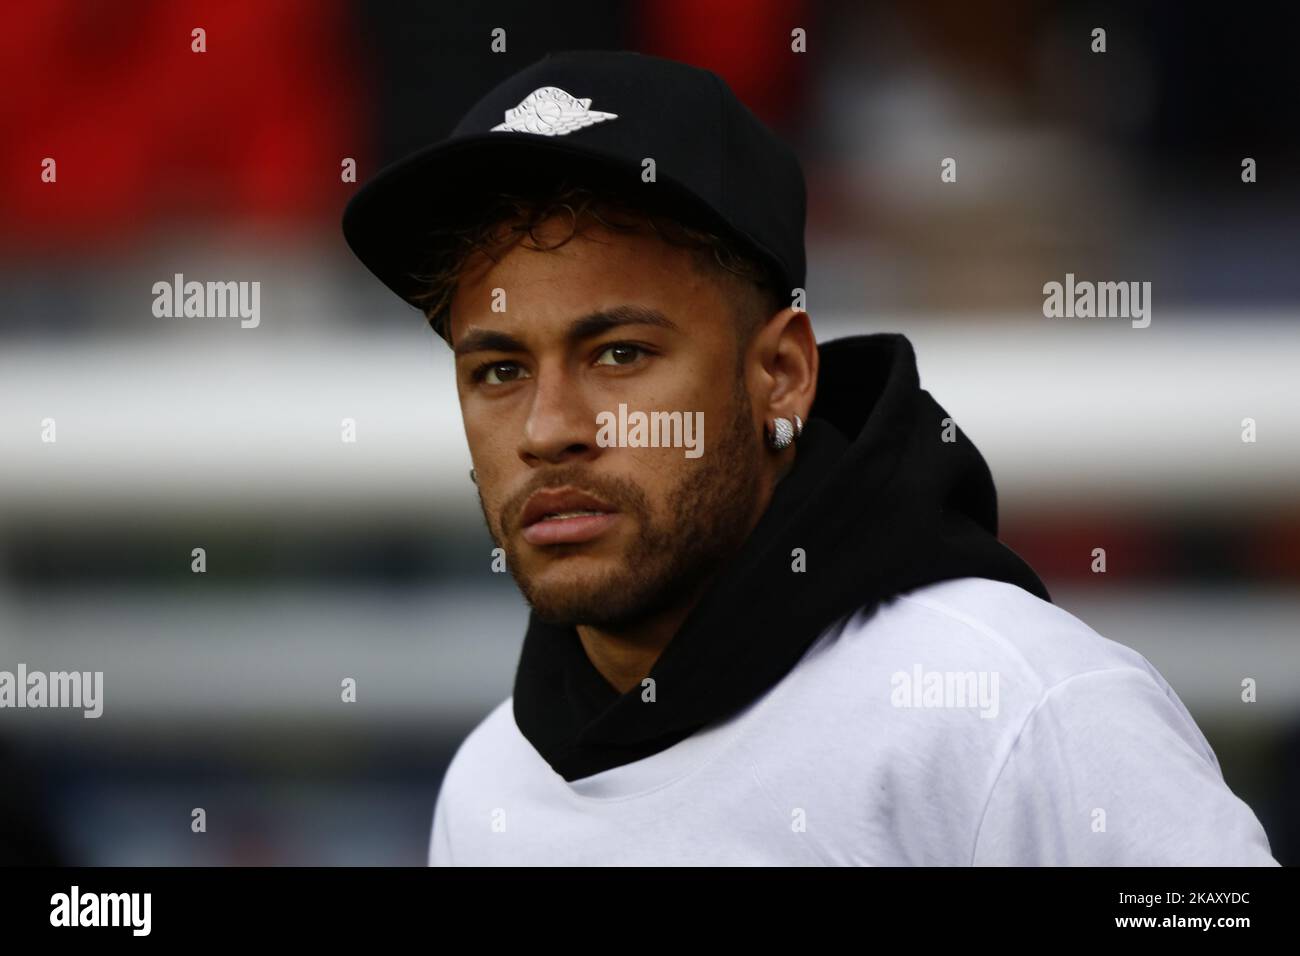 Neymar Jr of PSG attends the Ligue 1 match between Paris Saint Germain and  Stade Rennes